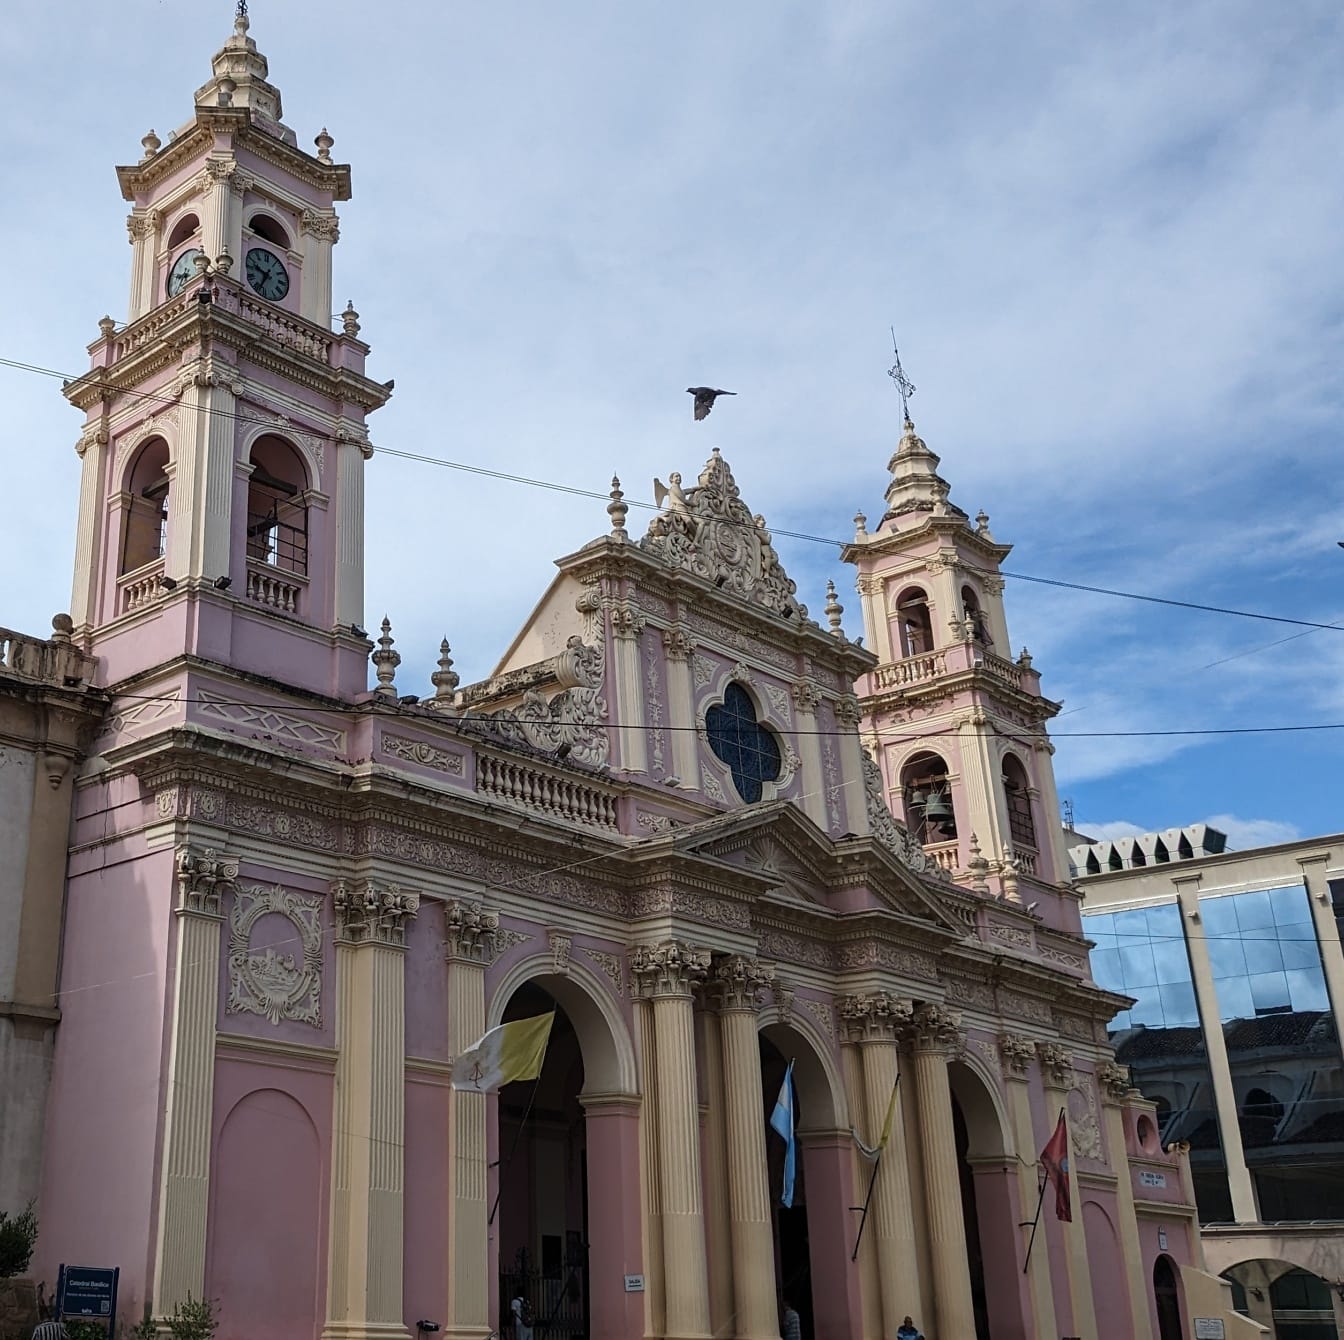 Katedrální bazilika Salta v Argentině v koloniálním architektonickém stylu s narůžovělou barvou na stěnách